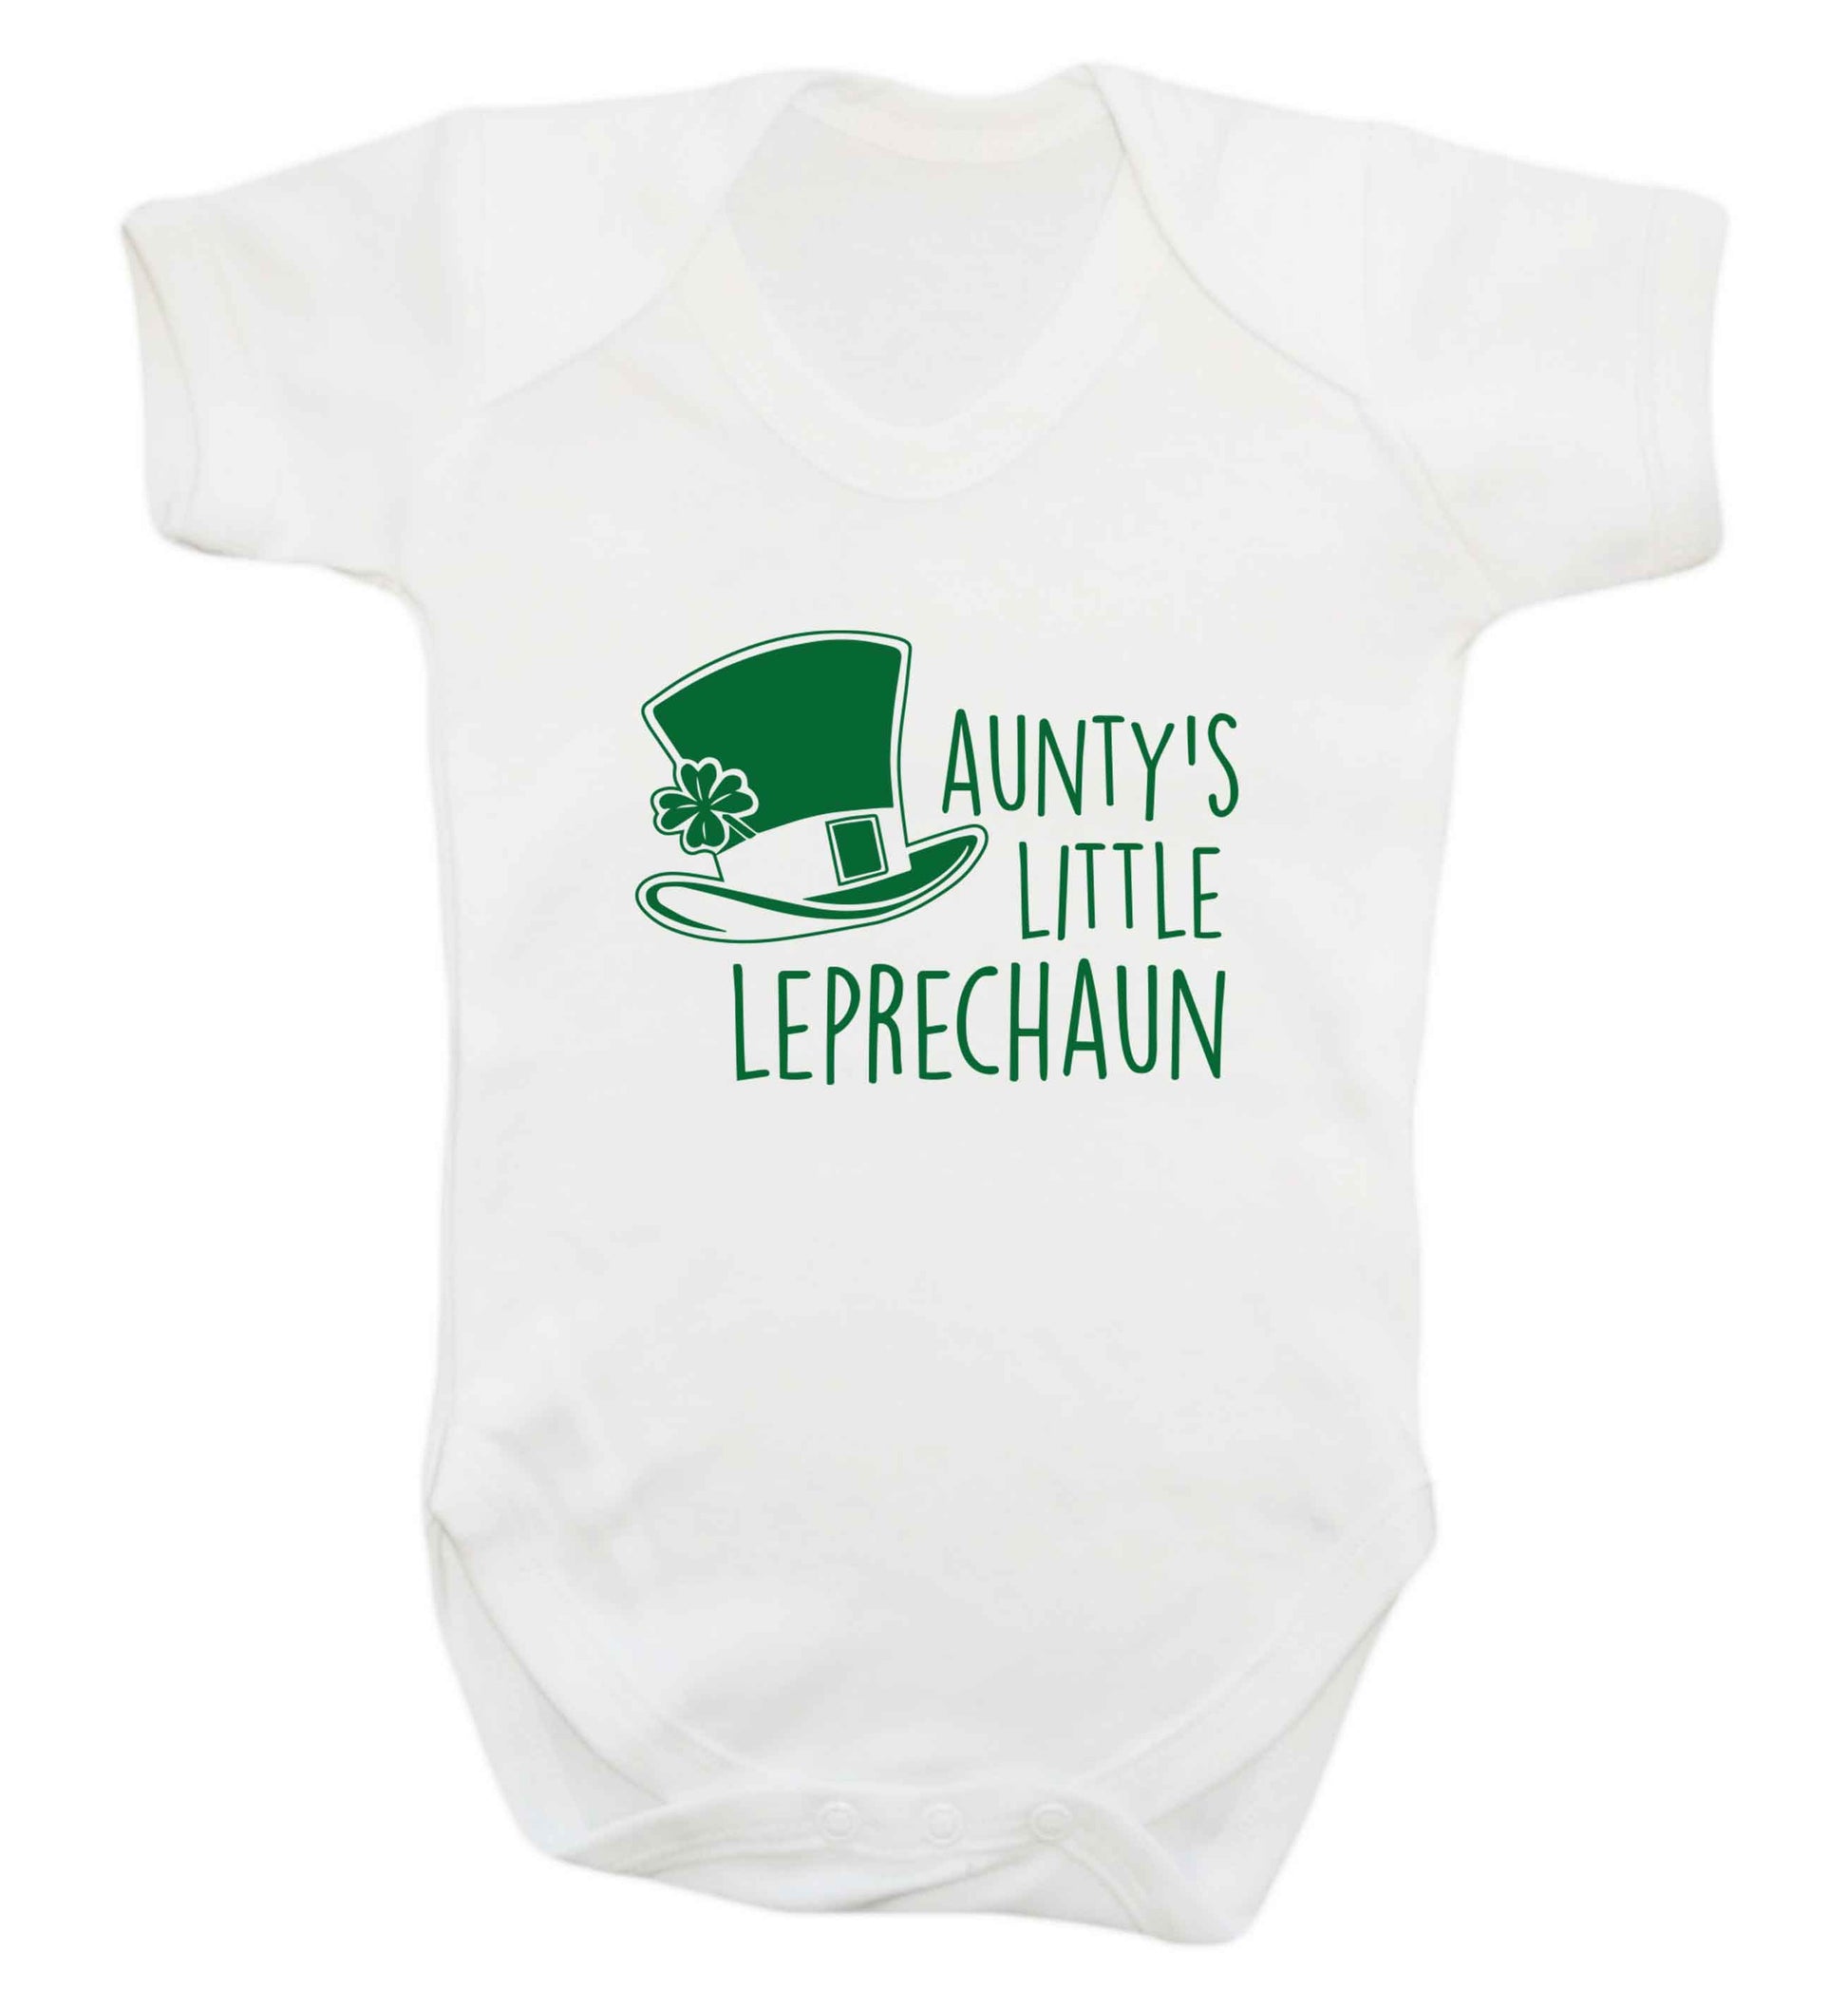 Aunty's little leprechaun baby vest white 18-24 months